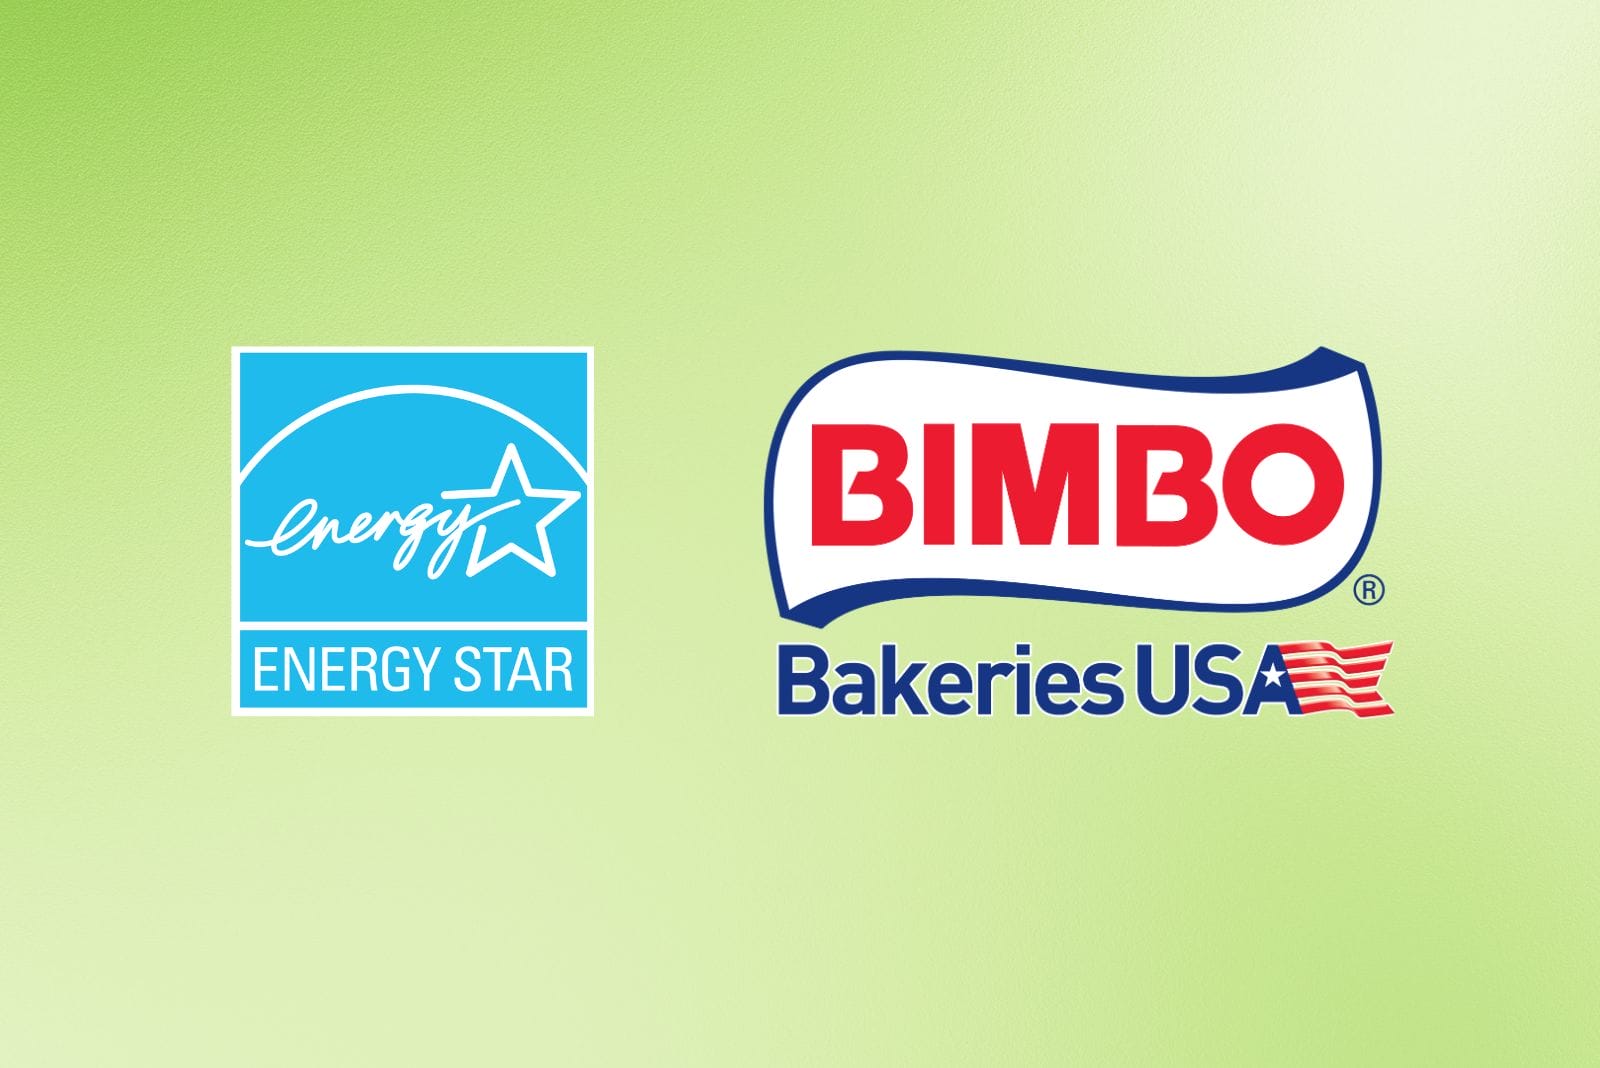 Energy Star logo and Bimbo Bakeries USA logo